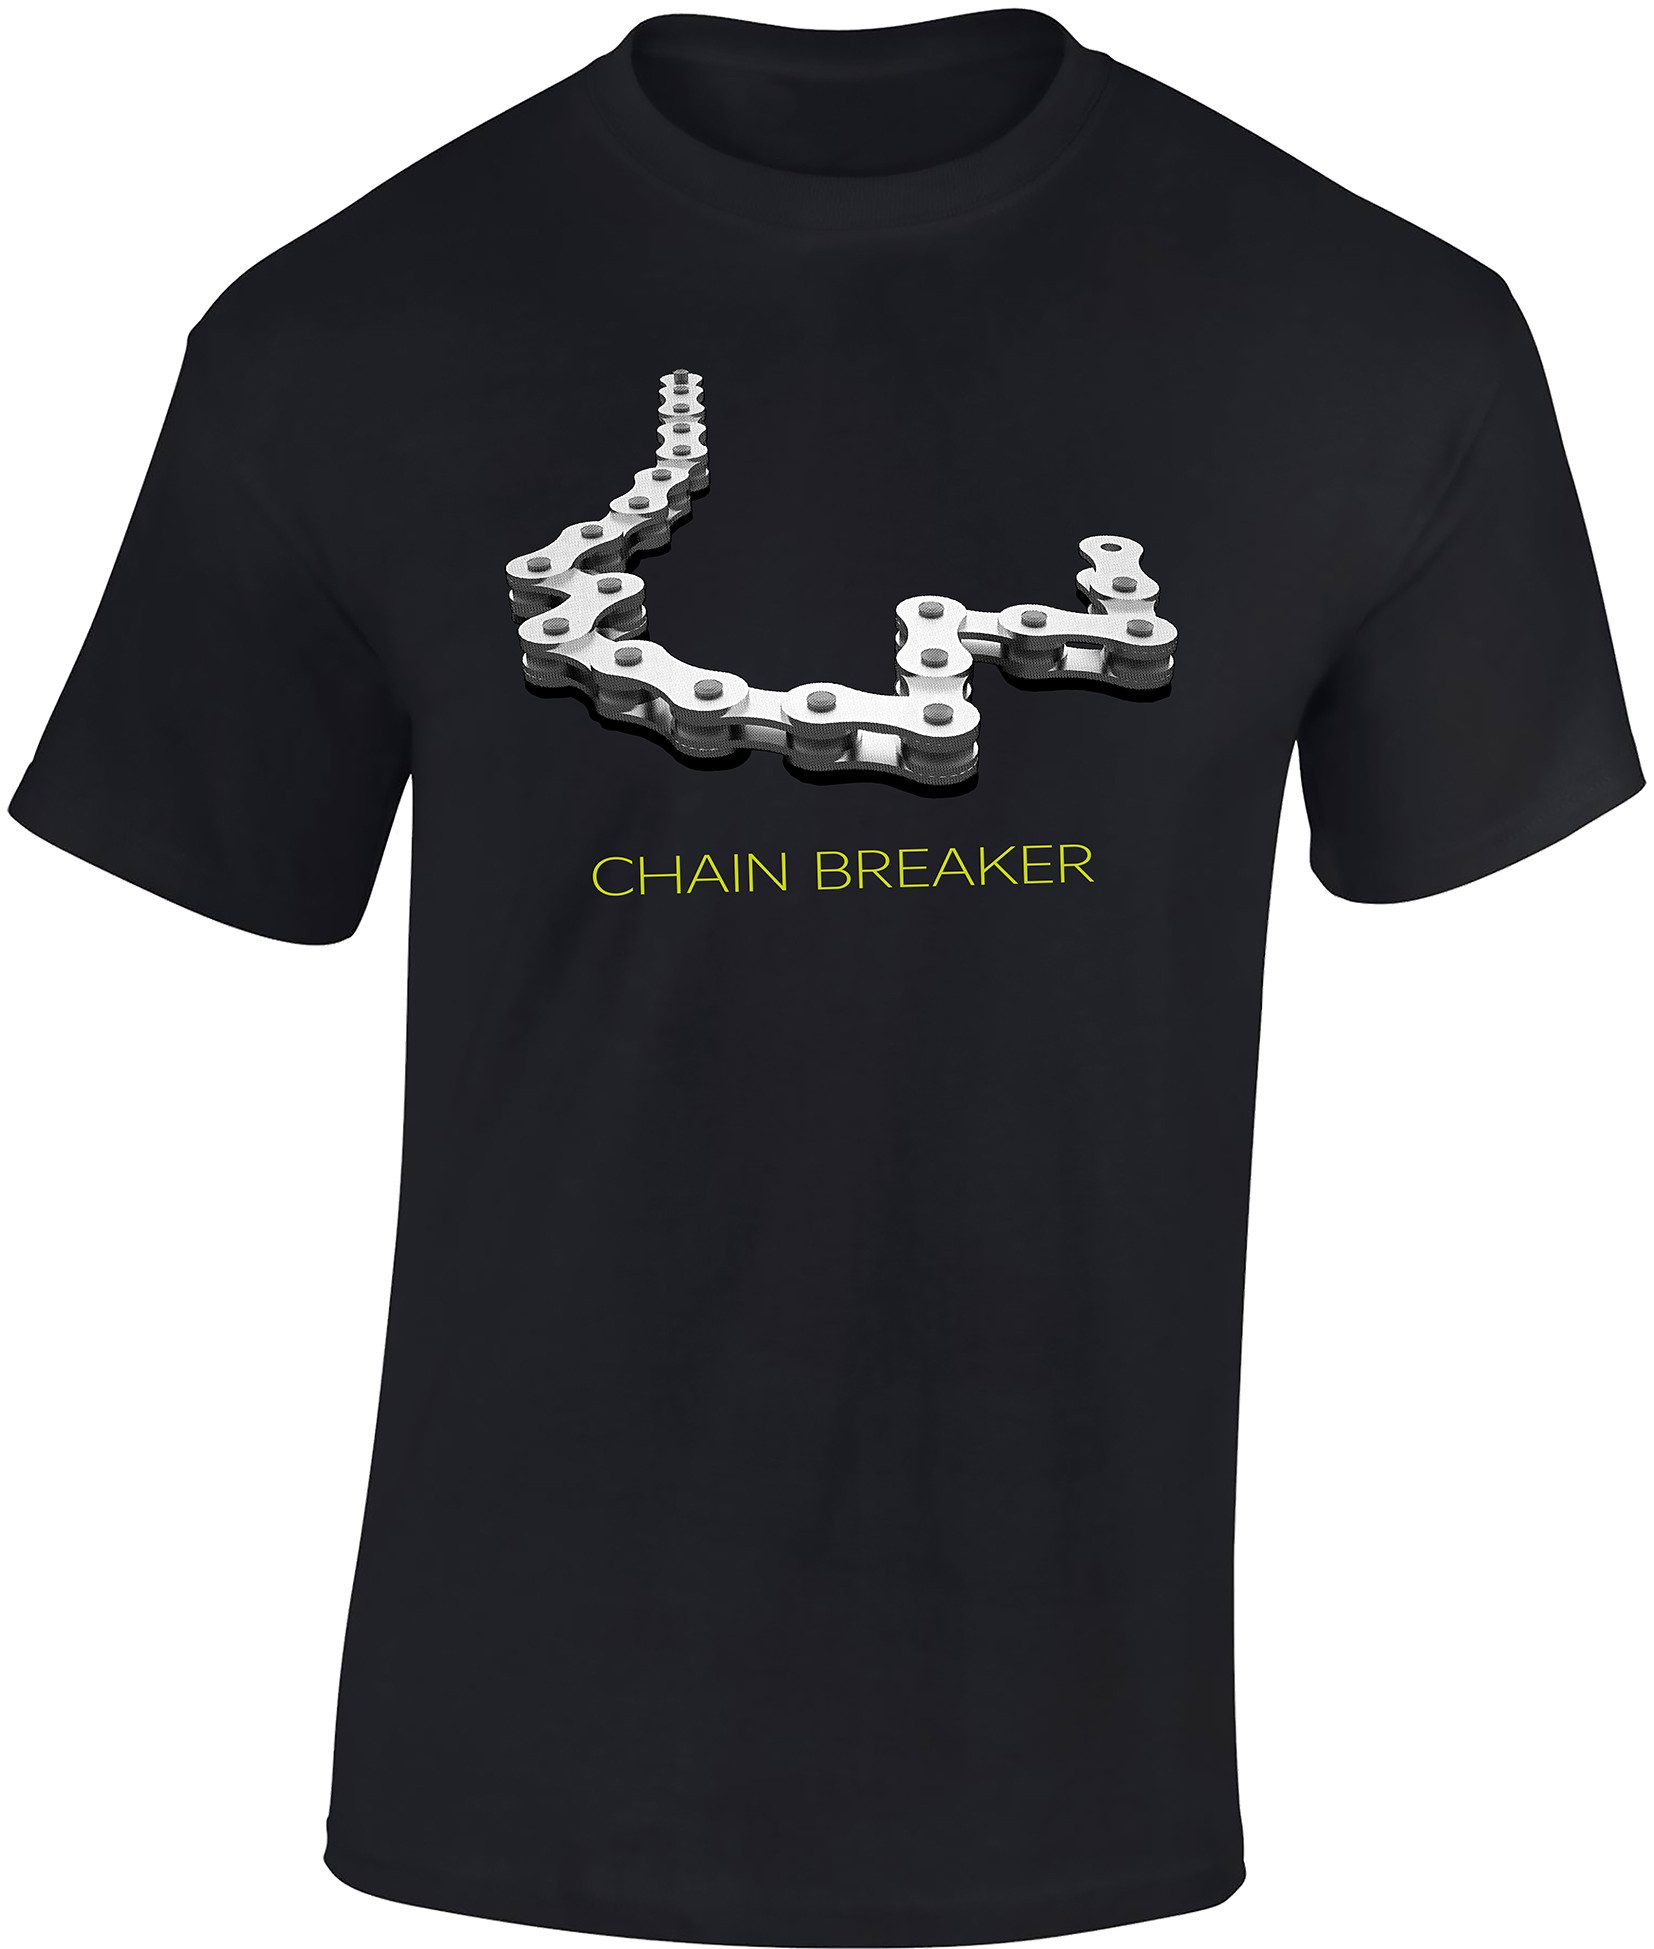 Baddery Print-Shirt Fahrrad T-Shirt : Chain Breaker - Sport Tshirts Herren hochwertiger Siebdruck, auch Übergrößen, aus Baumwolle